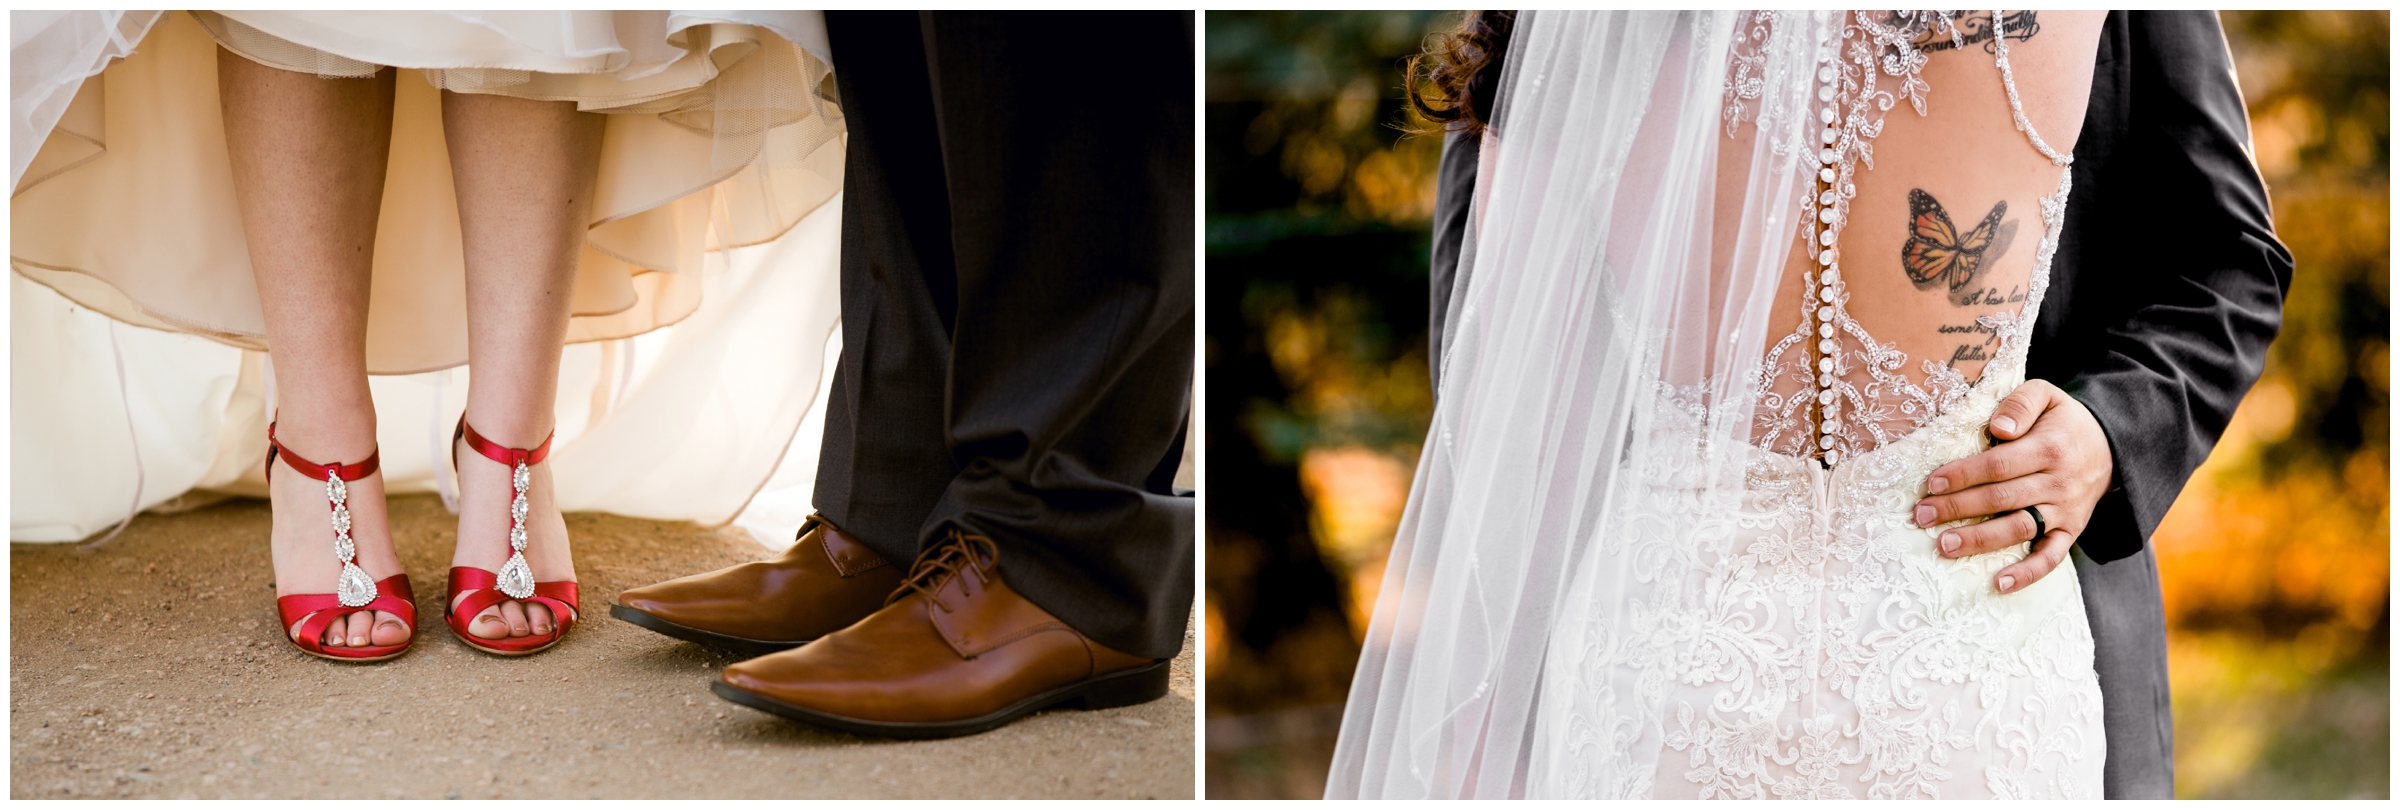 Colorado bride in red high heel wedding shoes